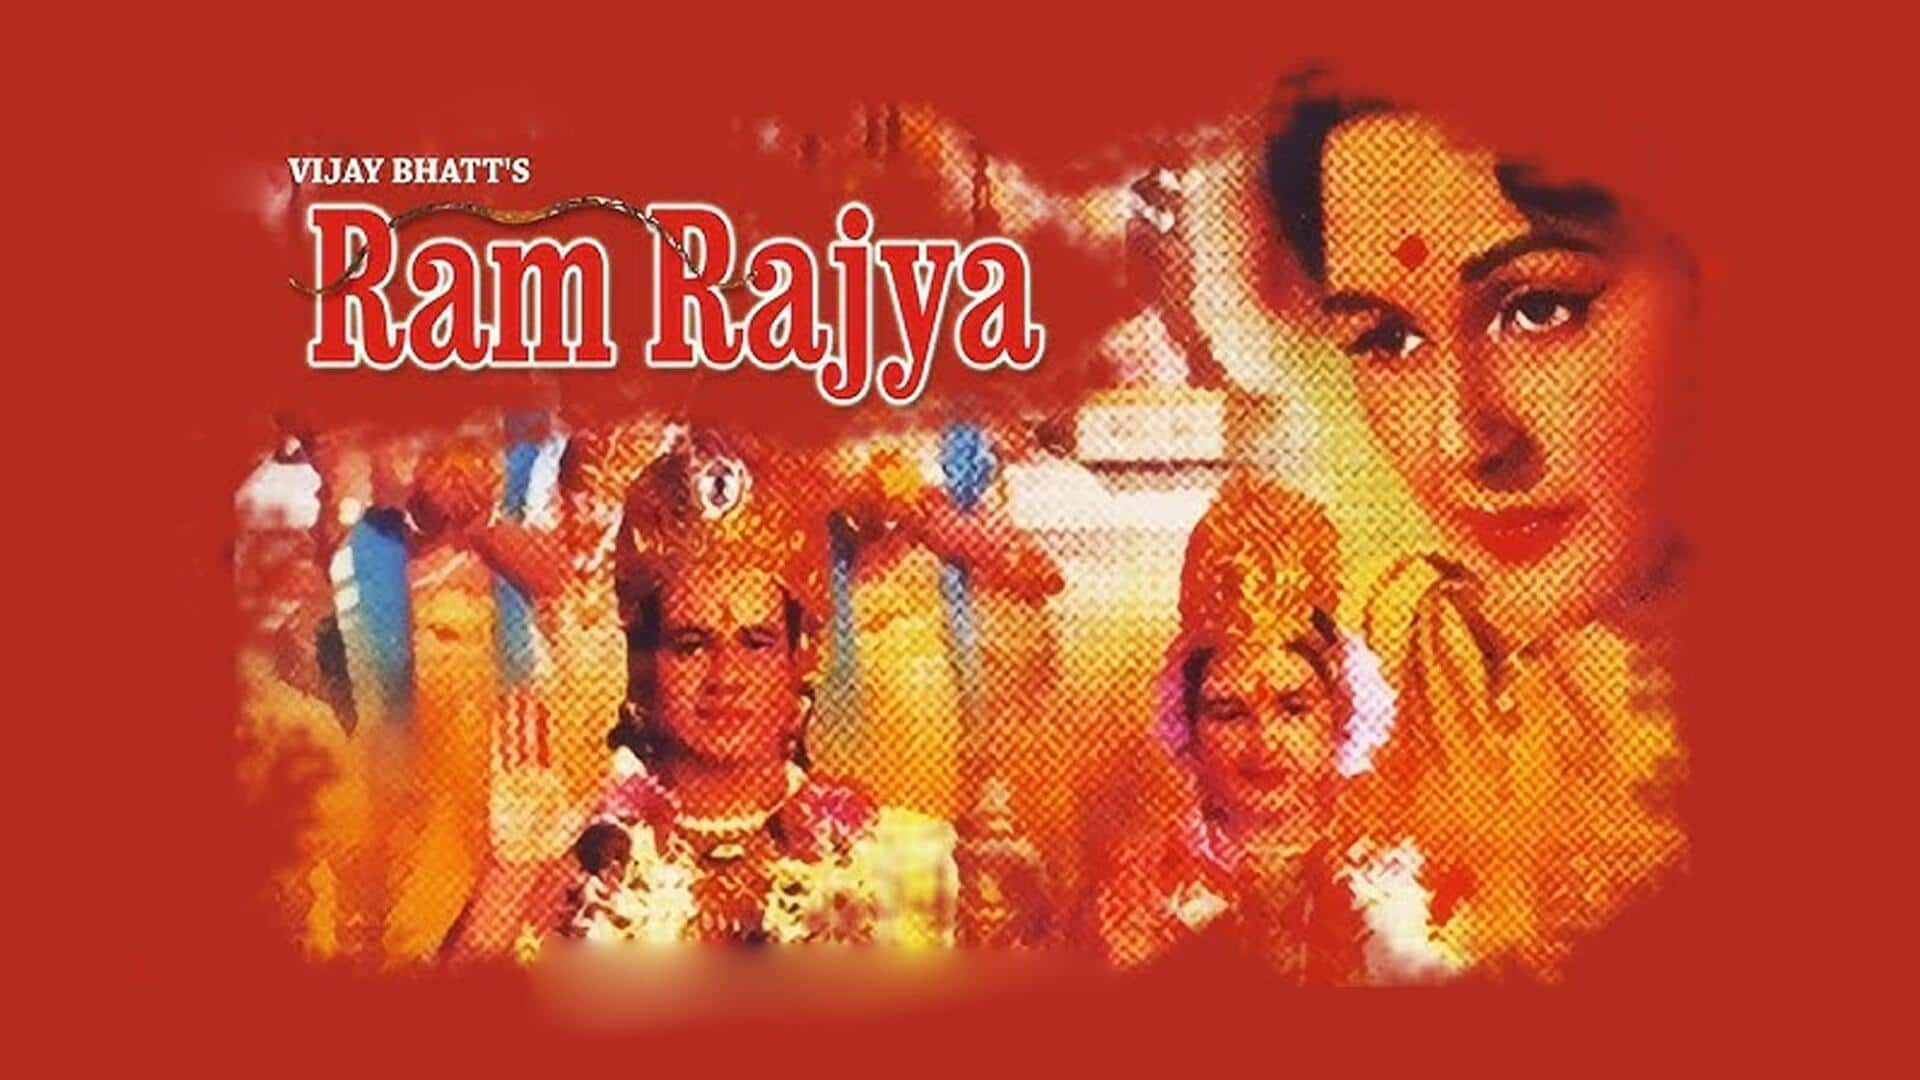 राम मंदिर: 81 साल पहले आई 'राम राज्य' थी अमेरिका में दिखाई गई पहली भारतीय फिल्म